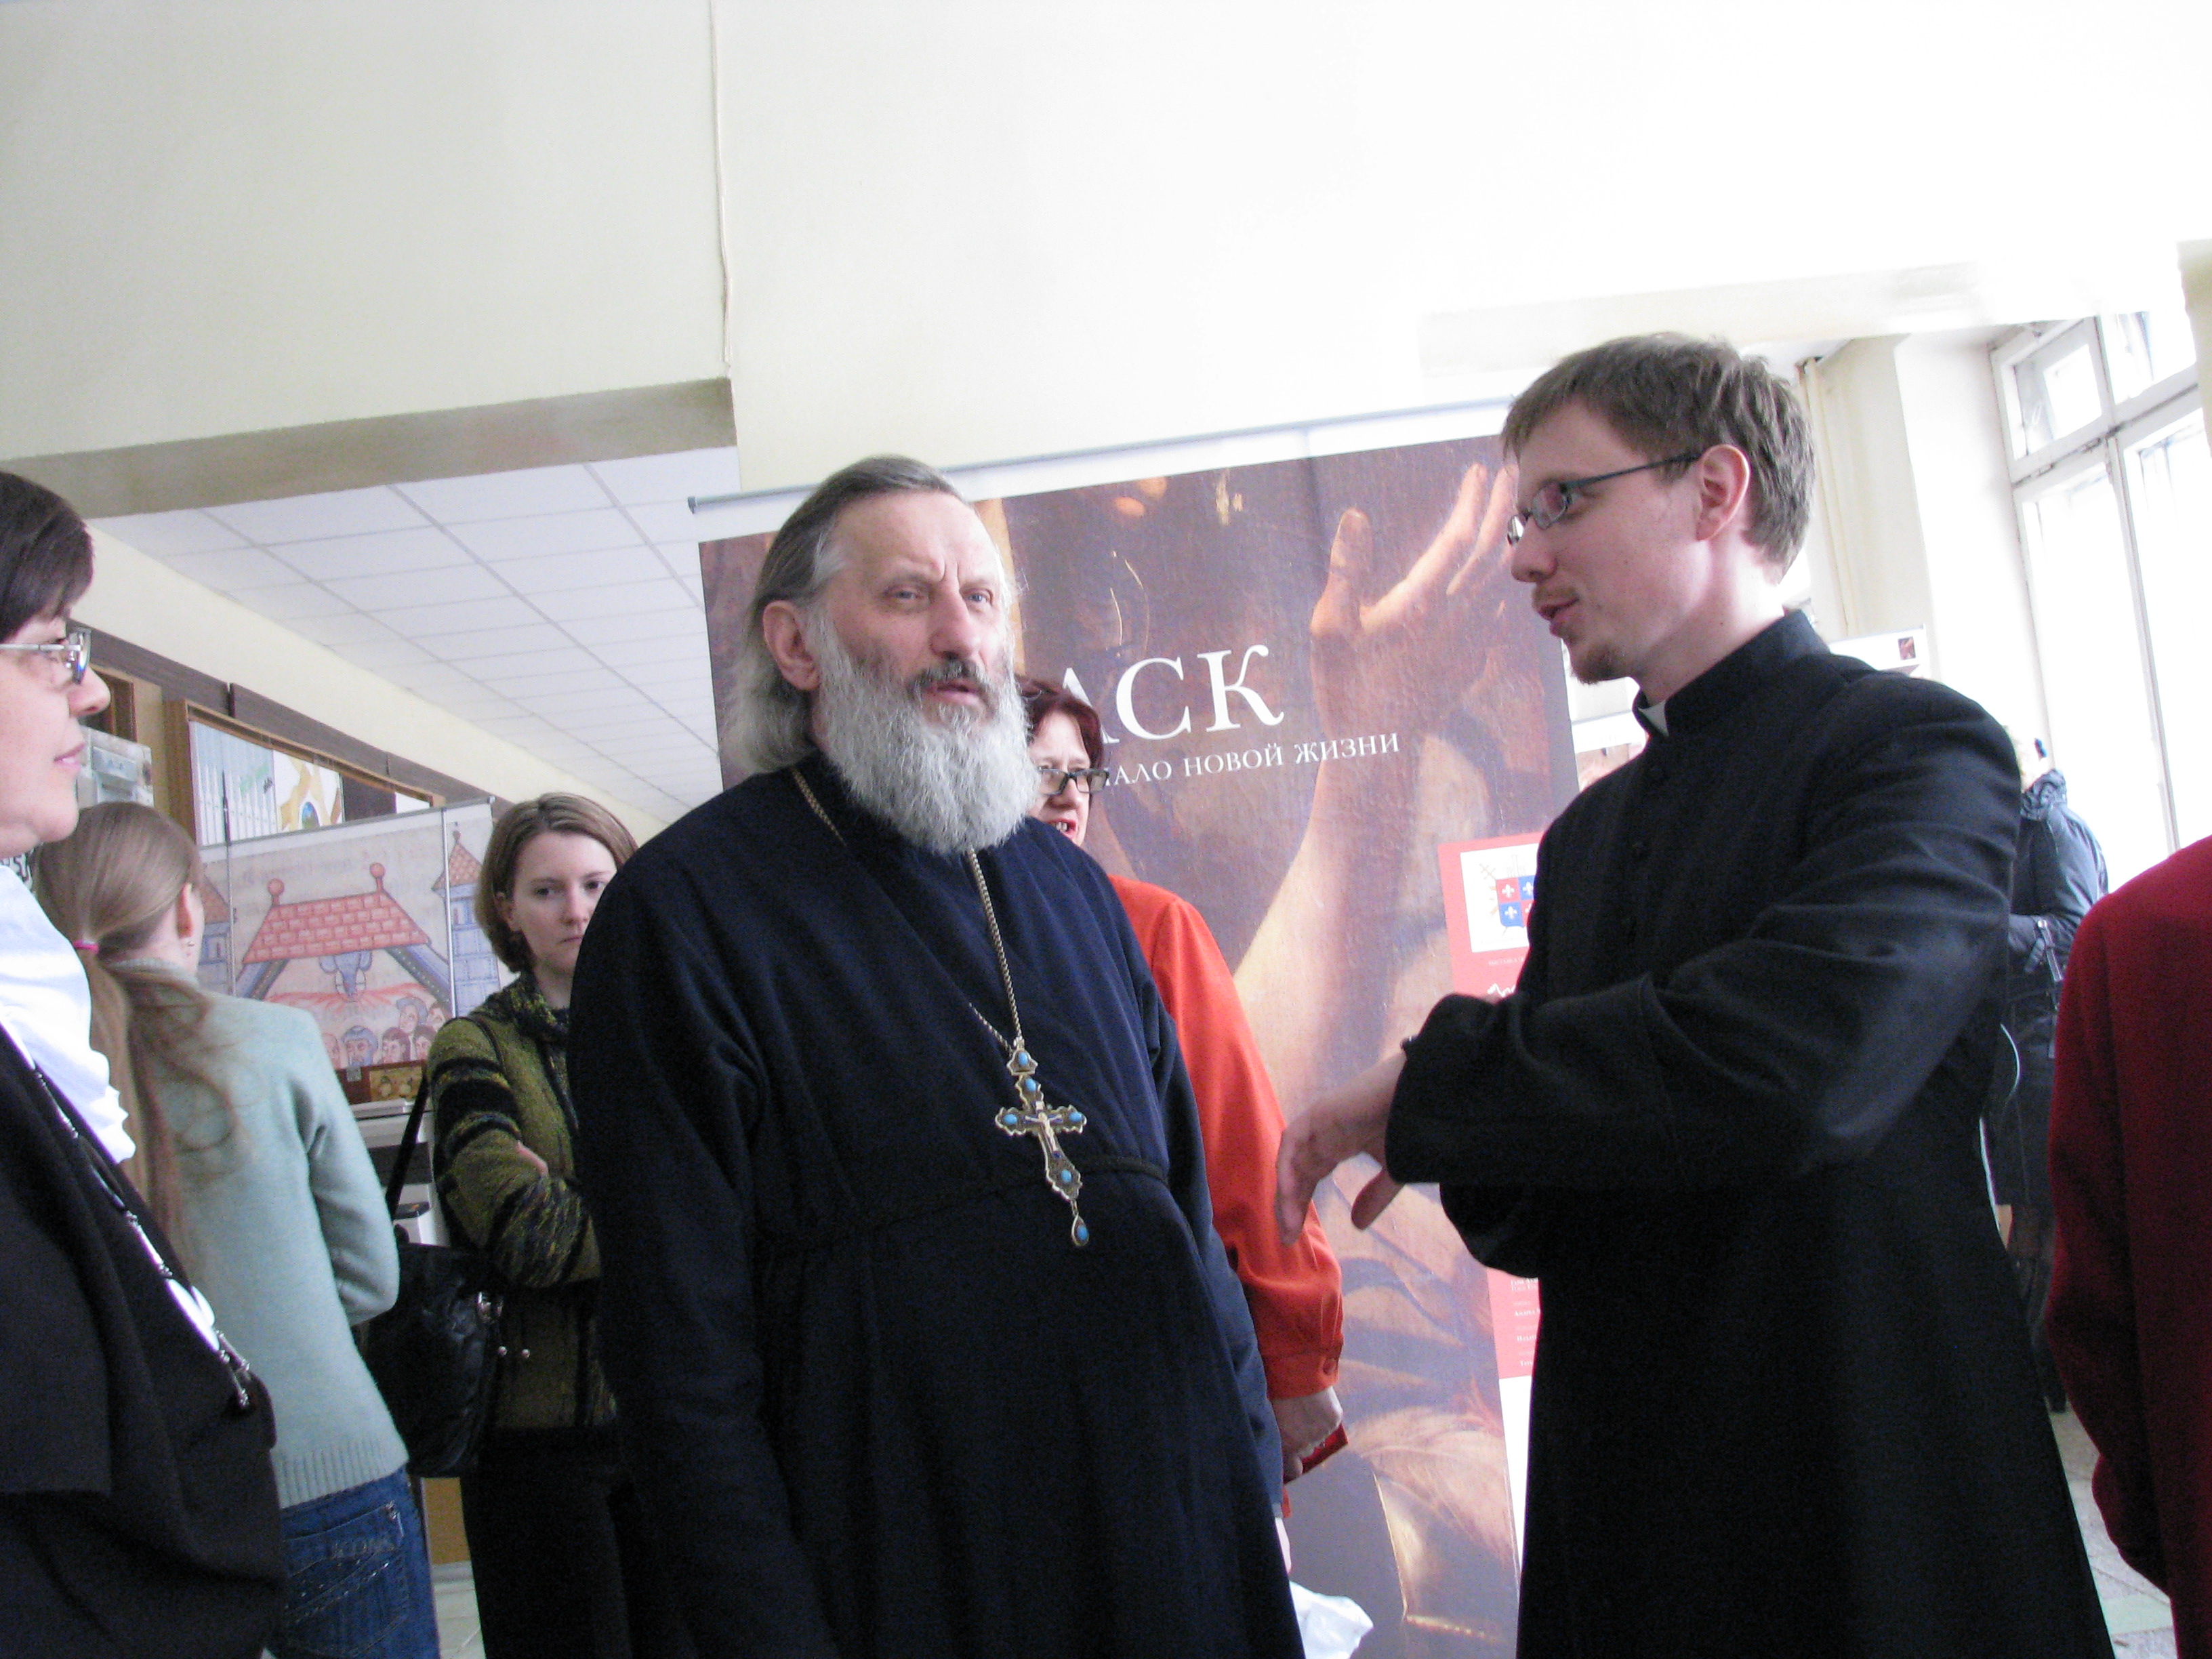 Nella foto: Padre Georgij Gorbaciuik, rettore del seminario ortodosso della diocesi di Vladimir